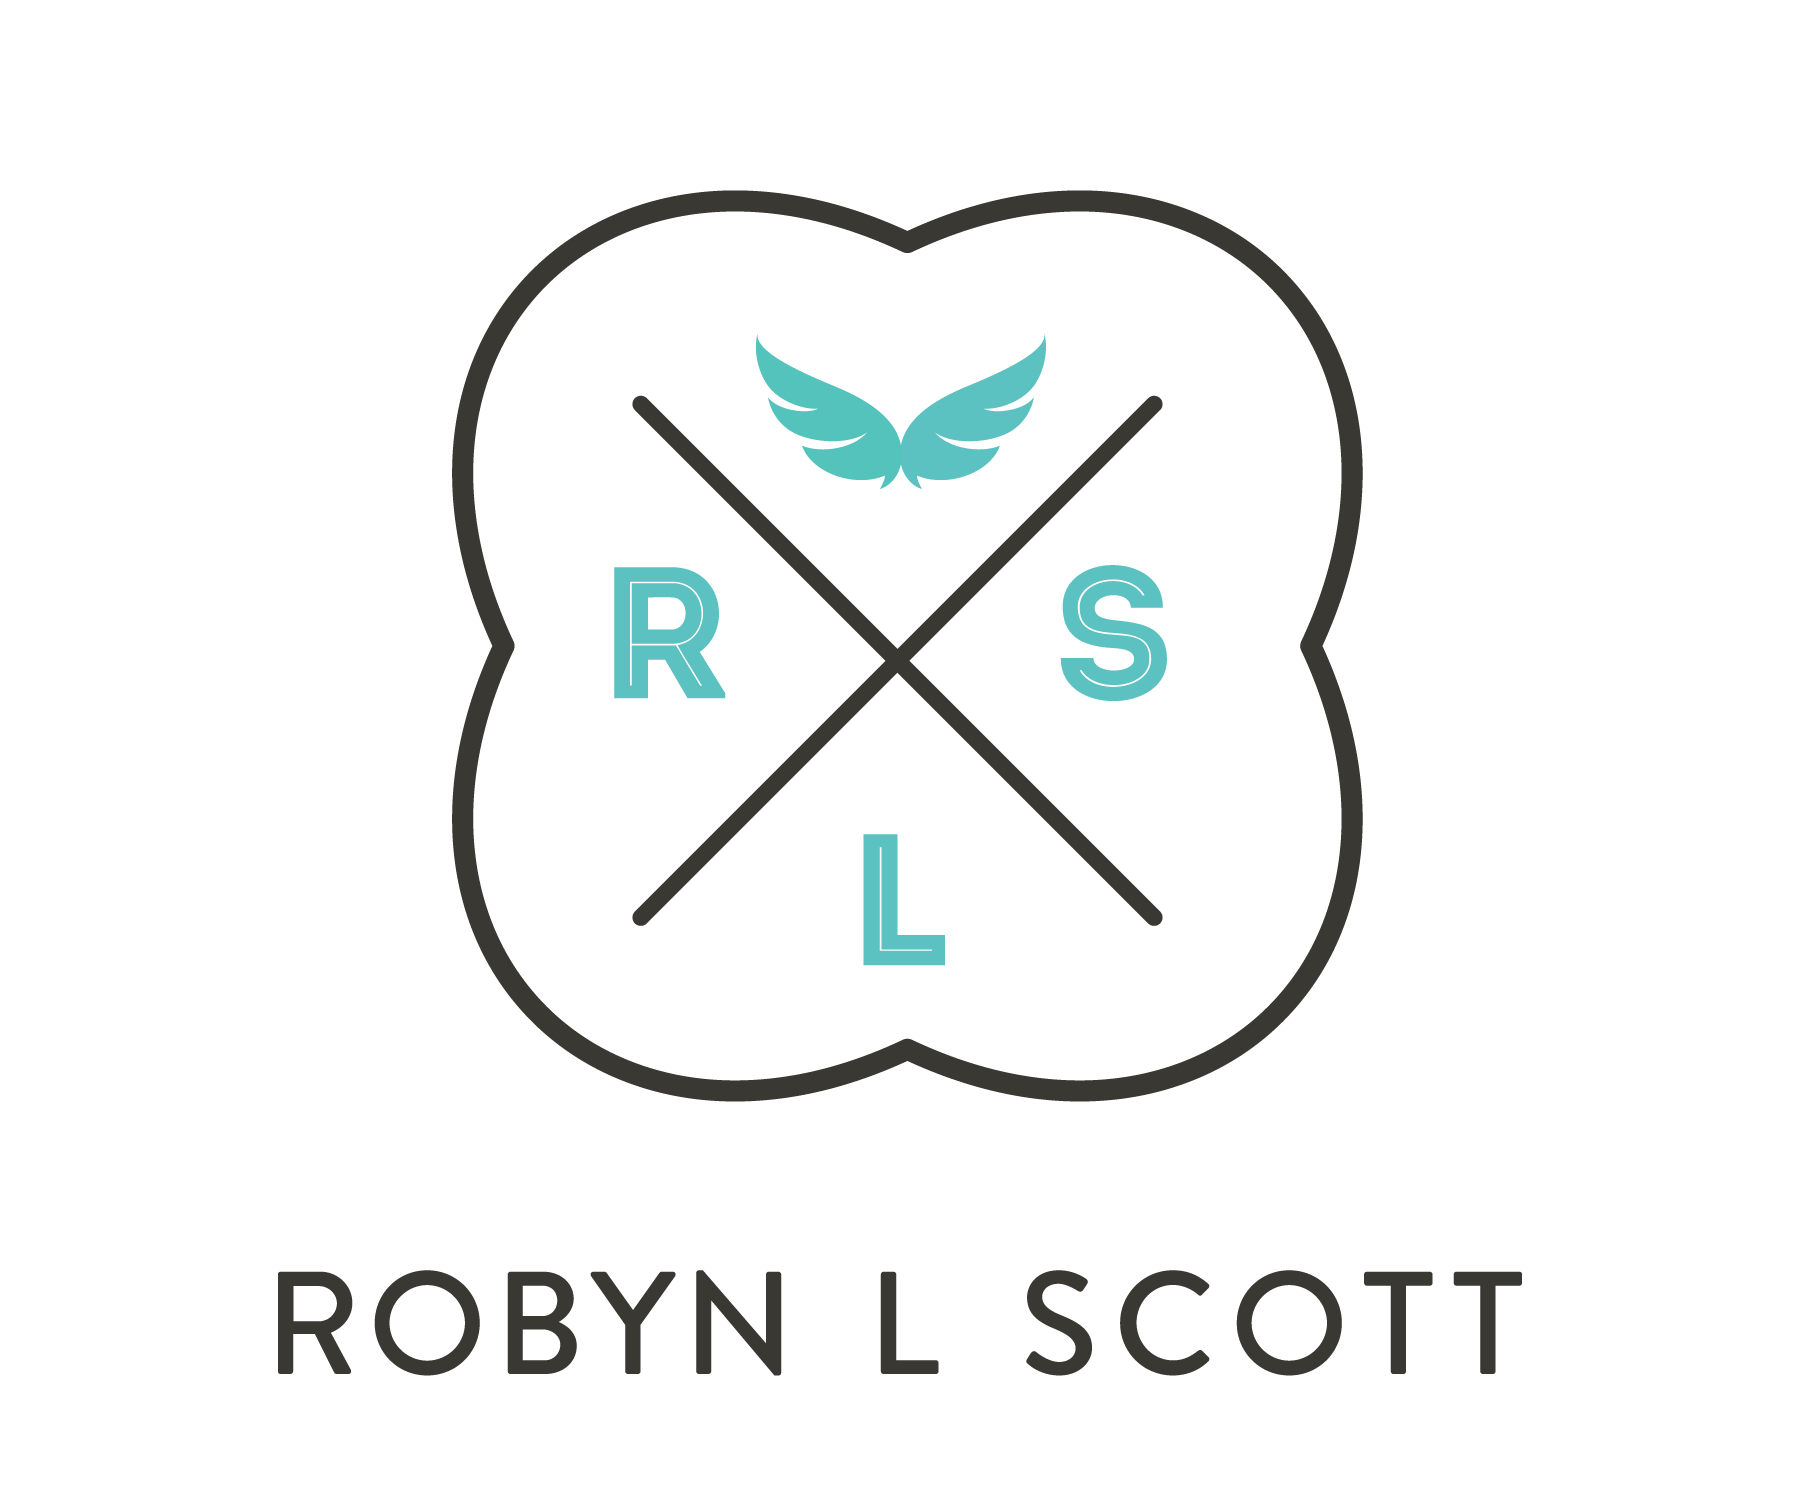 Robyn L Scott